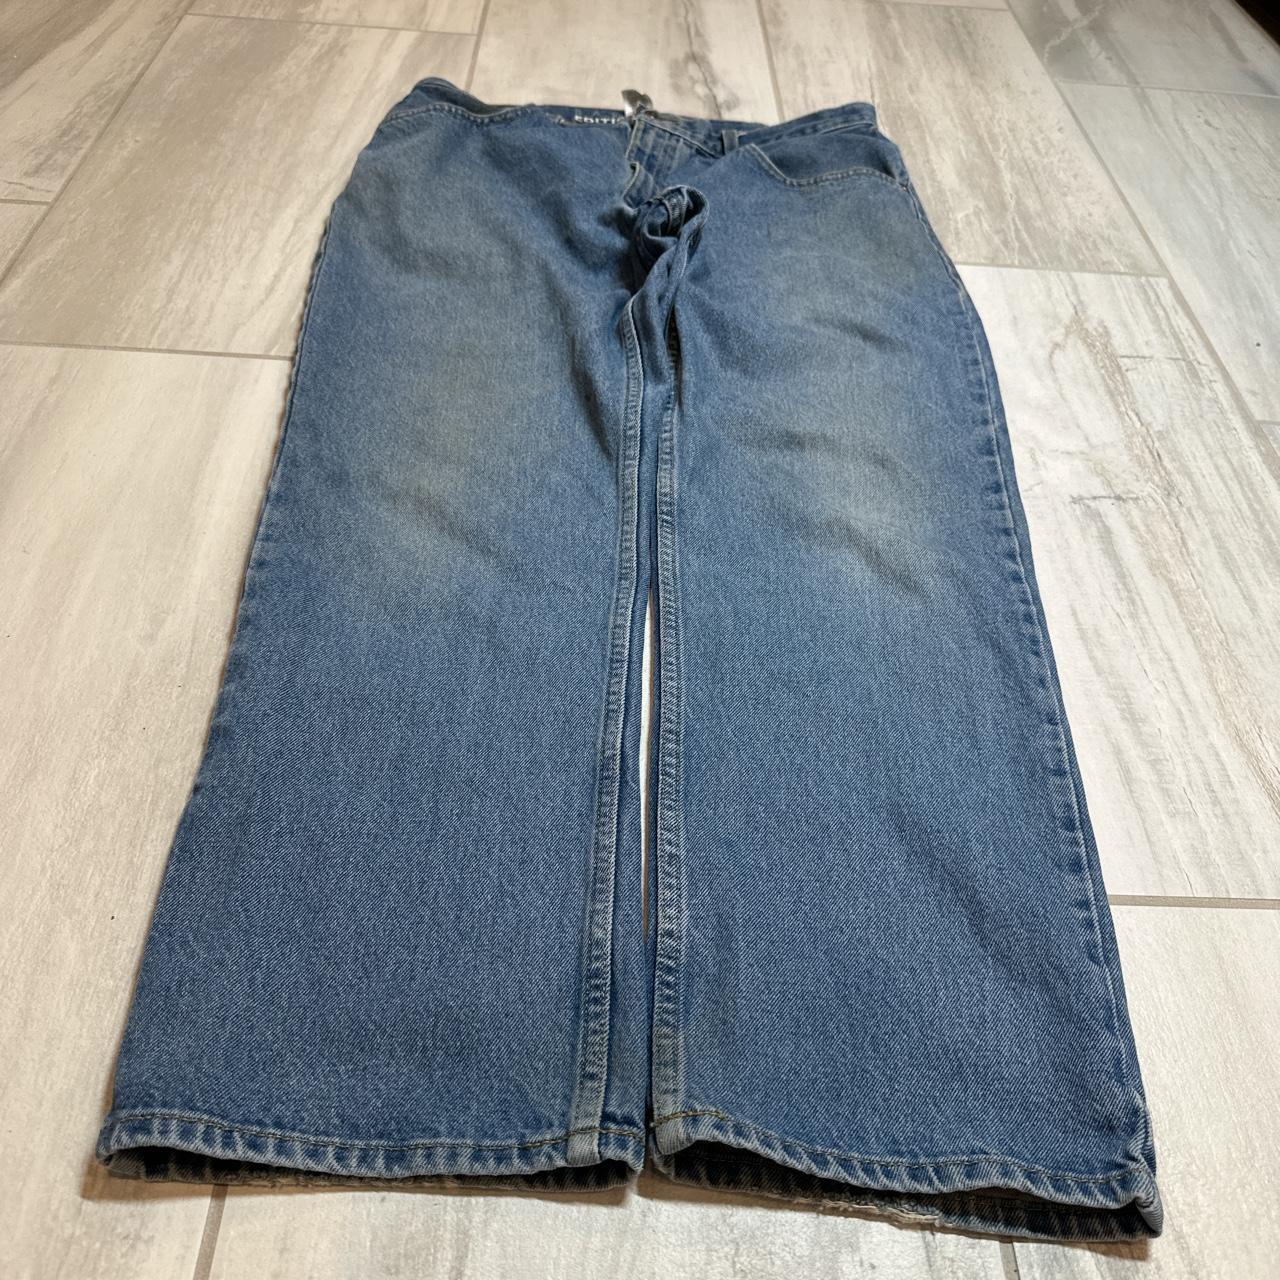 Vintage baggy skater jeans Size 36/30 Leg opening... - Depop